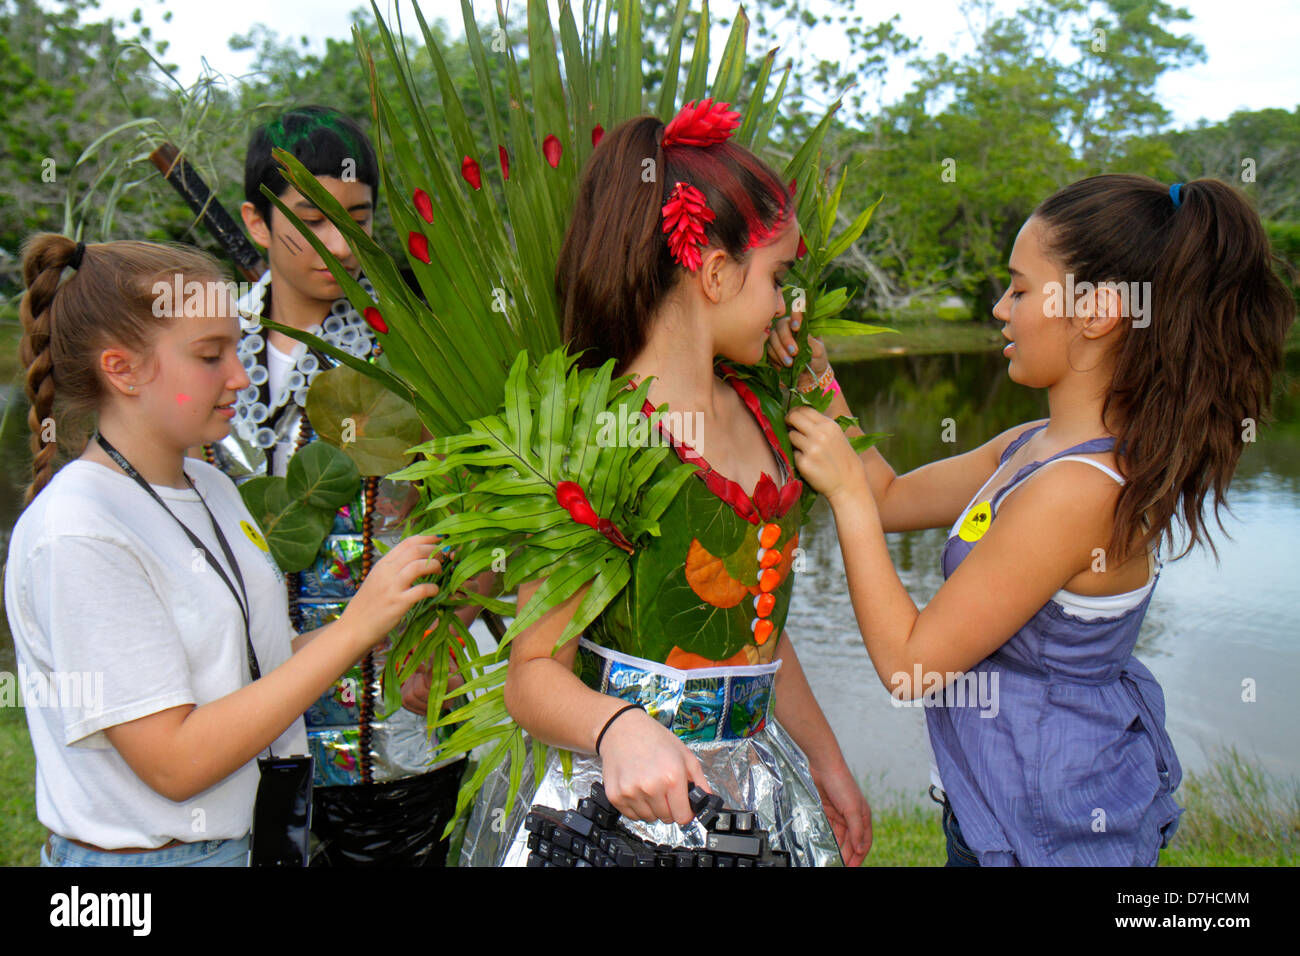 Miami Florida,Coral Gables,Fairchild Botanical Tropical Garden,student students education pupil pupils,teen teens teenage teenager teenagers youth ado Stock Photo